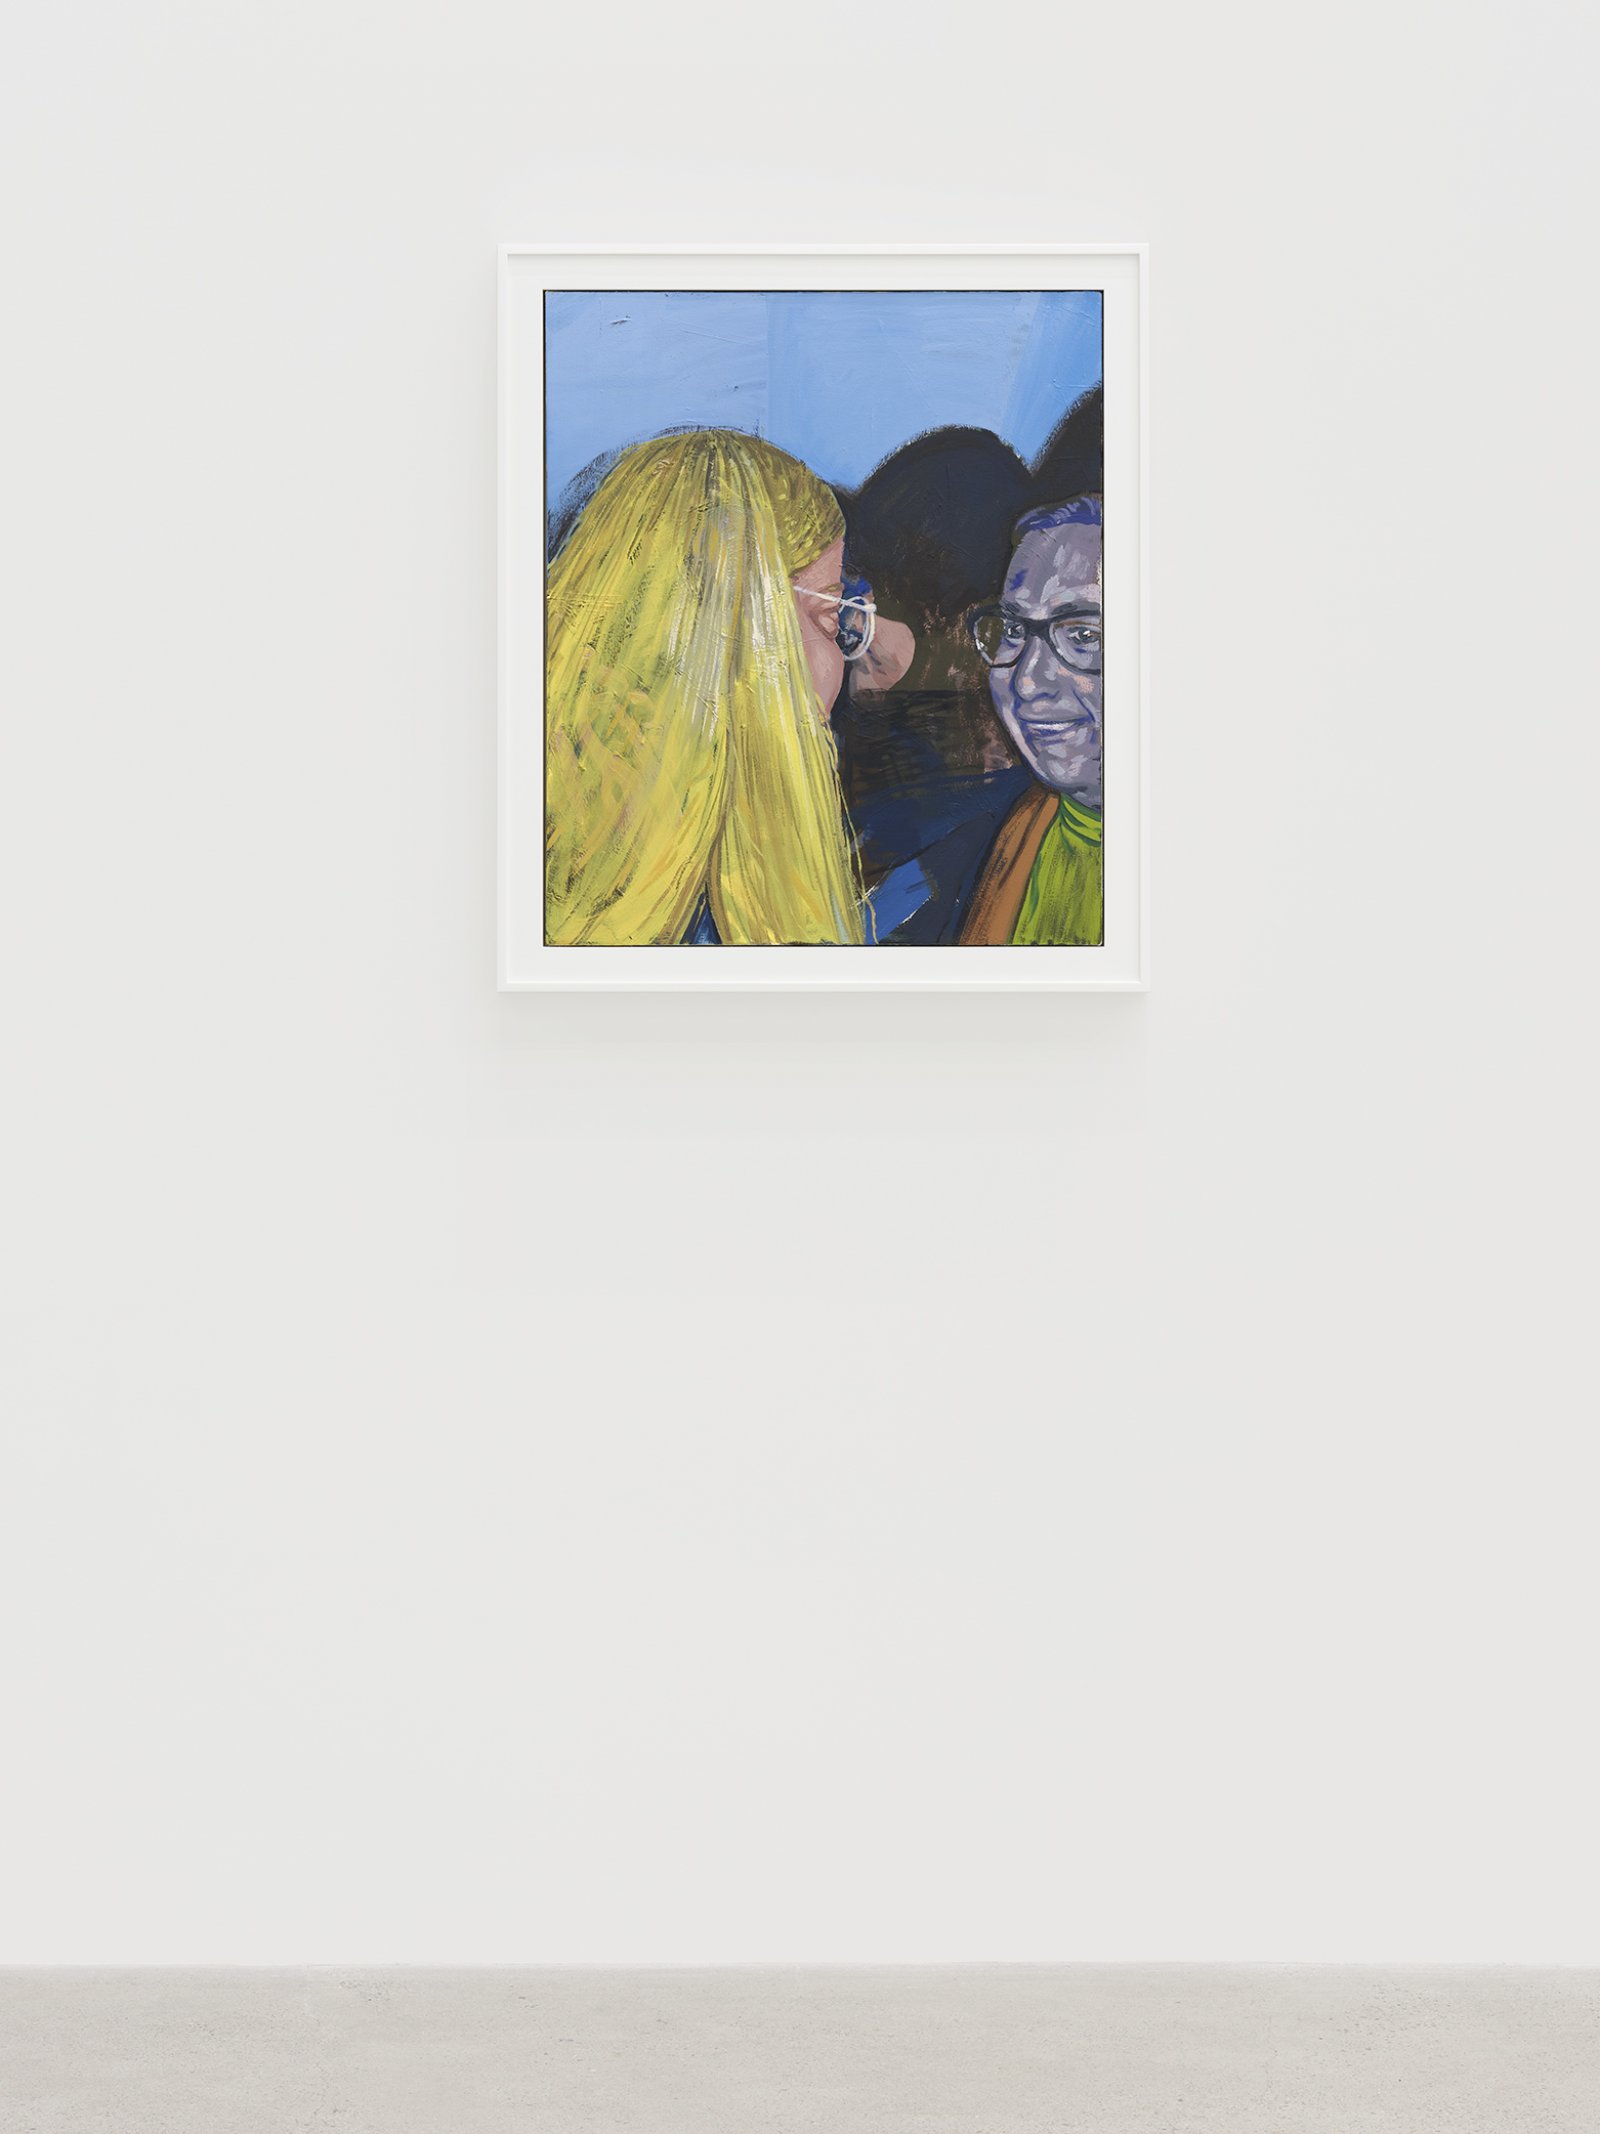 ​Damian Moppett, Little Blonde Head, 2020, oil on canvas, 32 x 27 in. (81 x 69 cm) by Damian Moppett